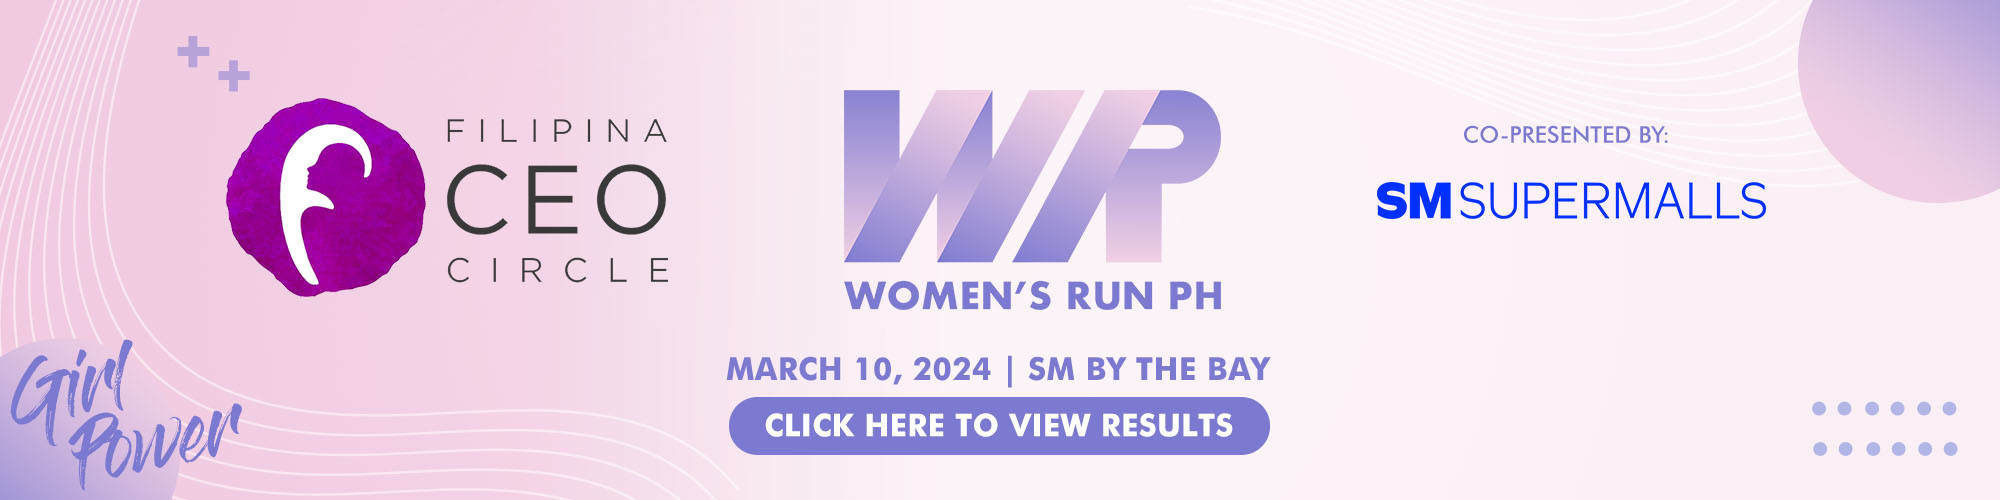 FCC Women's Run PH 2024